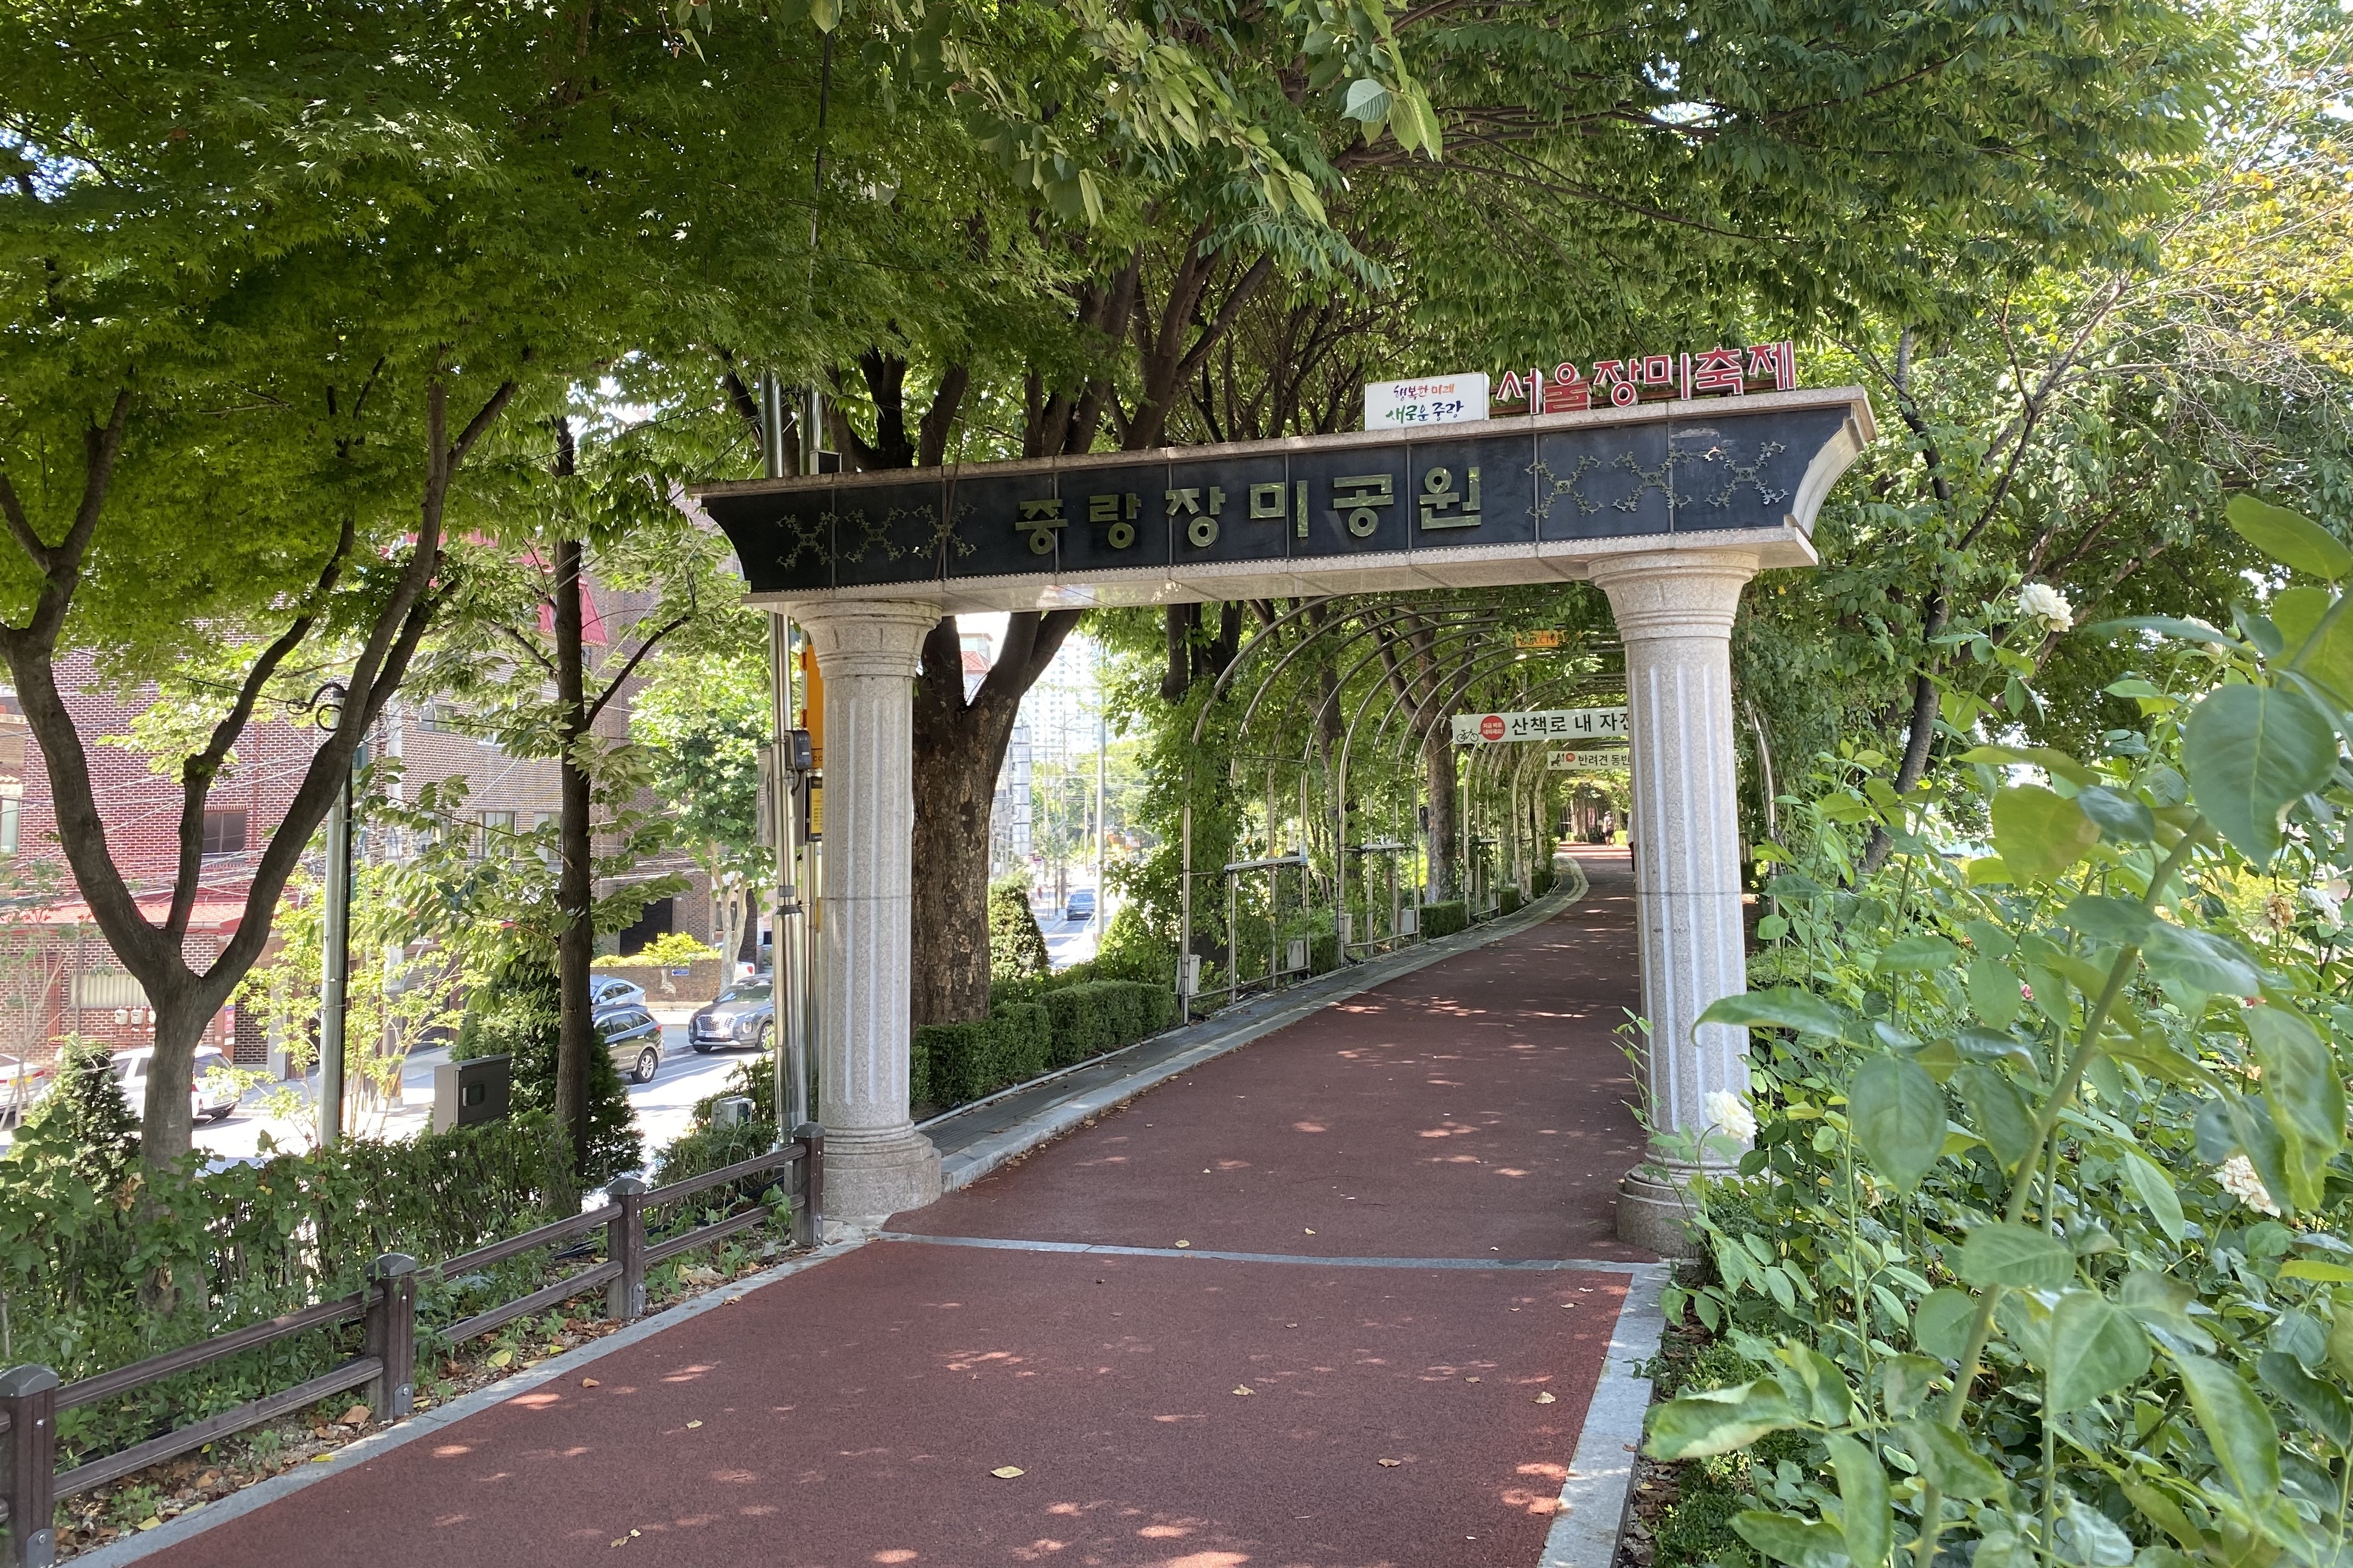 Seoul Rose Park (Jungnang Rose Park)3 : Walkway of Seoul Rose Park (Jungnang Rose Park)